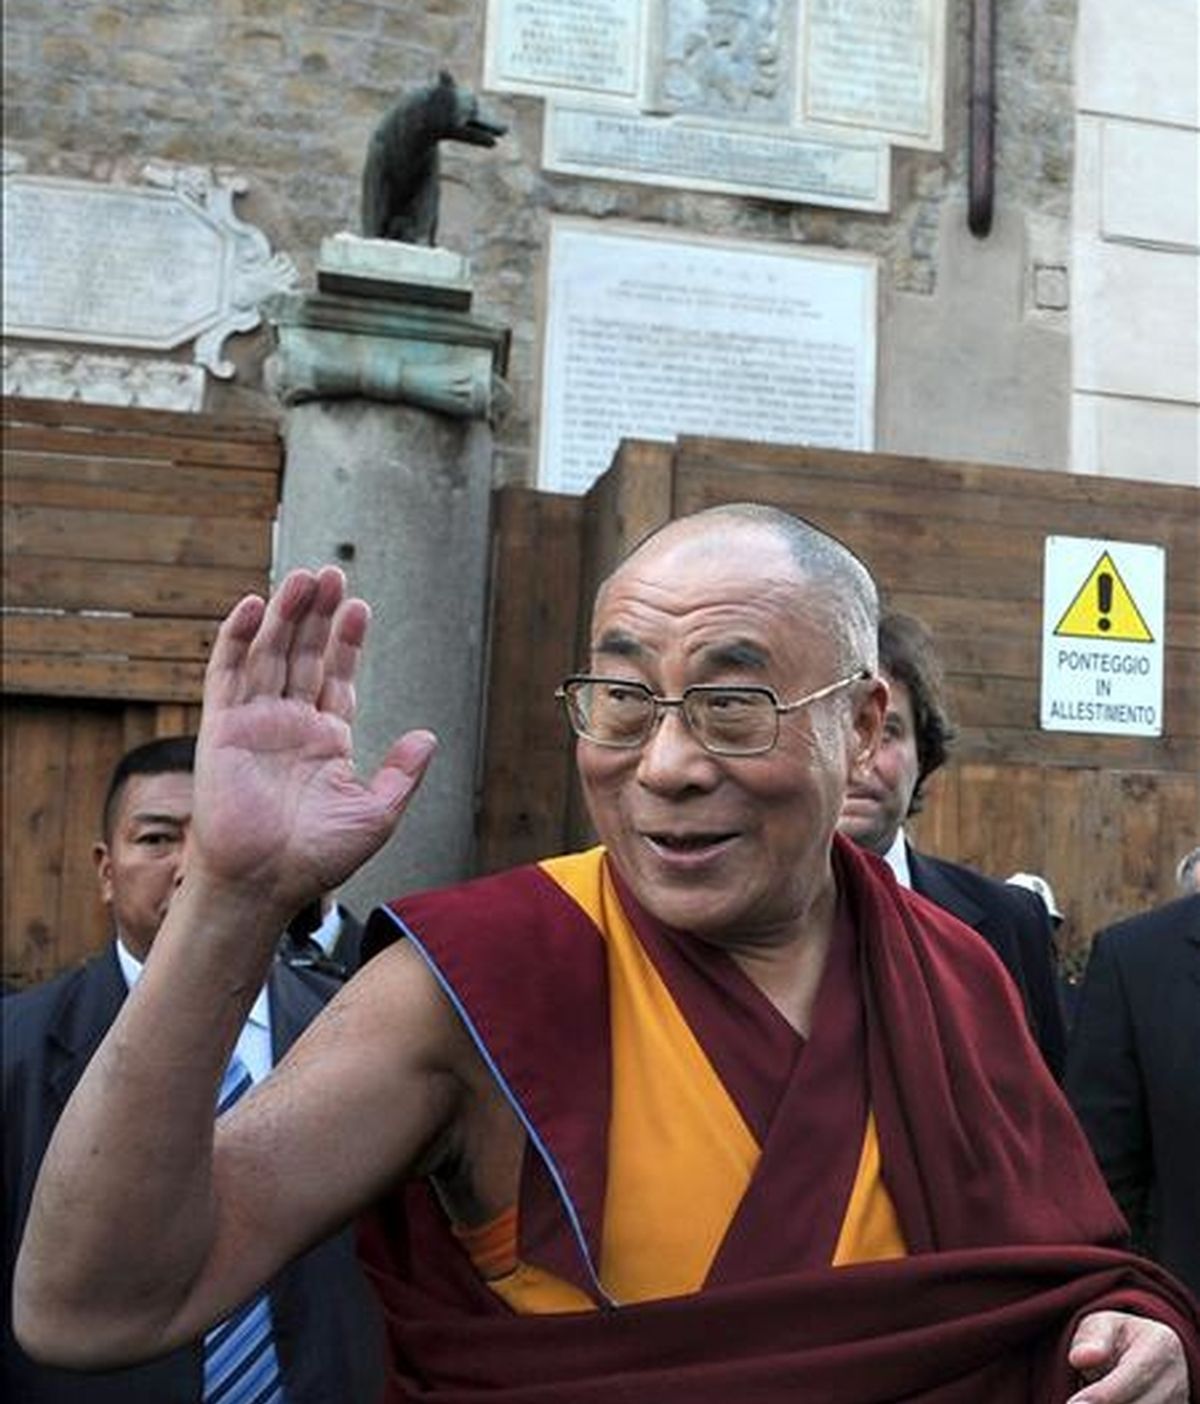 El Dalai Lama, líder espiritual del Tíbet, saluda a su llegada al Ayuntamiento de Roma, Italia, durante el acto en el que recibió la "ciudadanía honoraria" de la capital italiana, hoy, 9 de febrero. El Dalai Lama anunció hoy que está "preparado" para retirarse "en breve" de los asuntos políticos del Tibet, puesto que se ha consolidado "un sistema democrático desde 2001". EFE